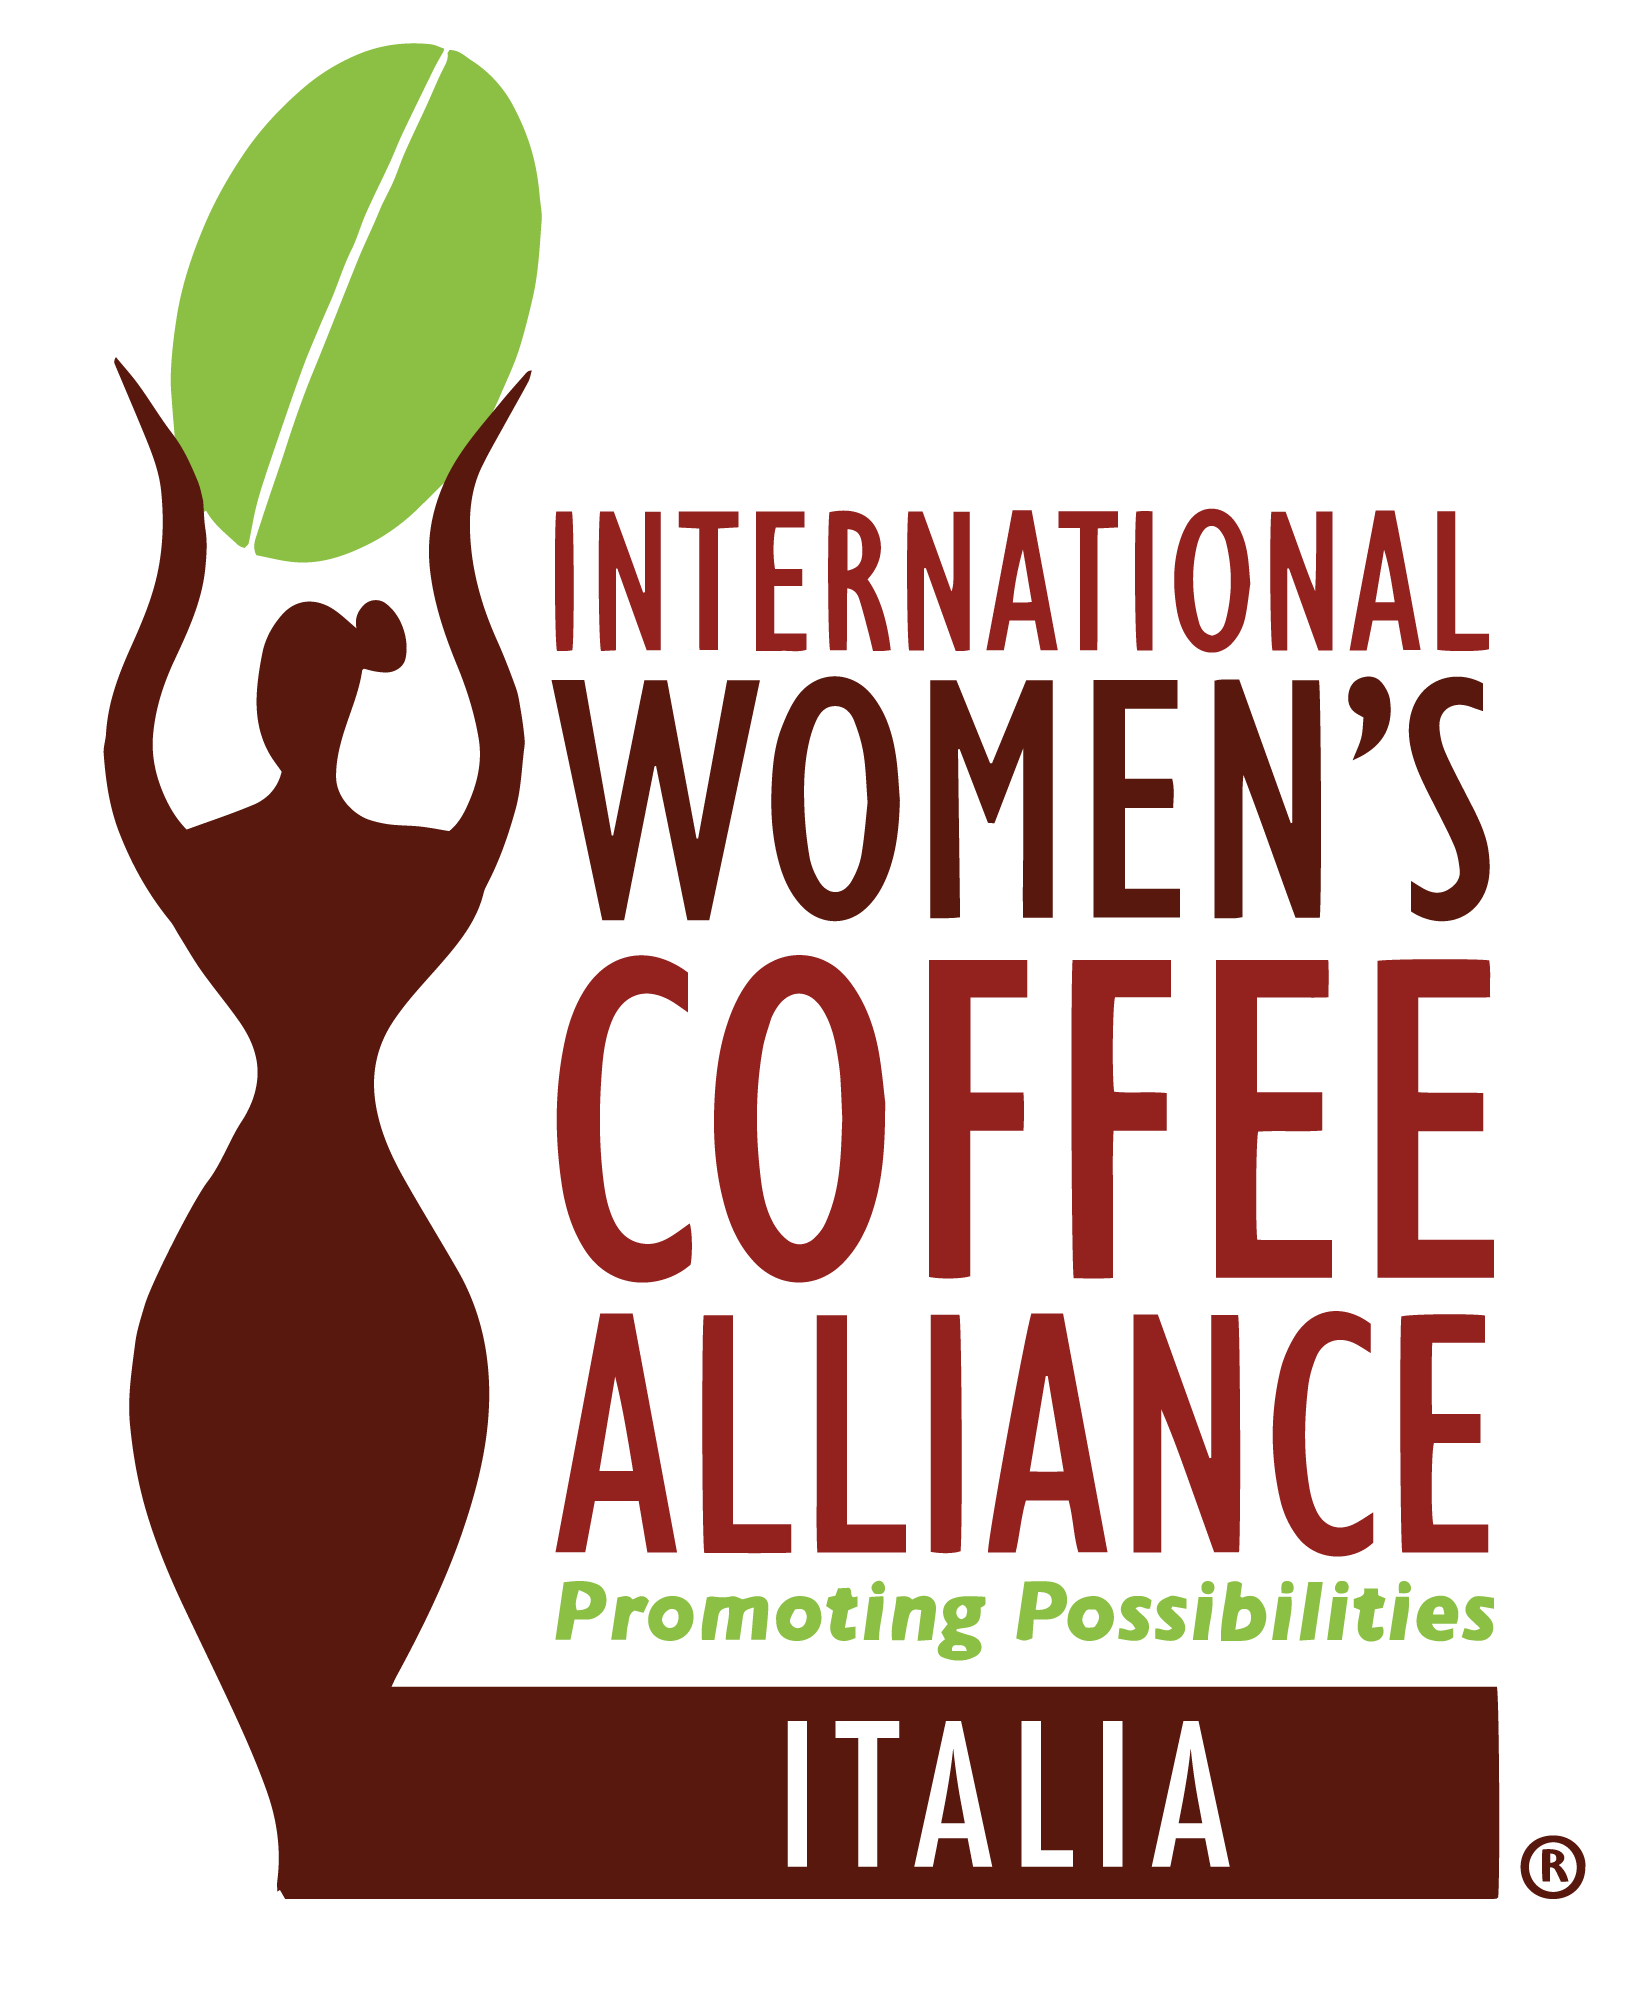 Alleanza delle Donne nel Caffè Italia